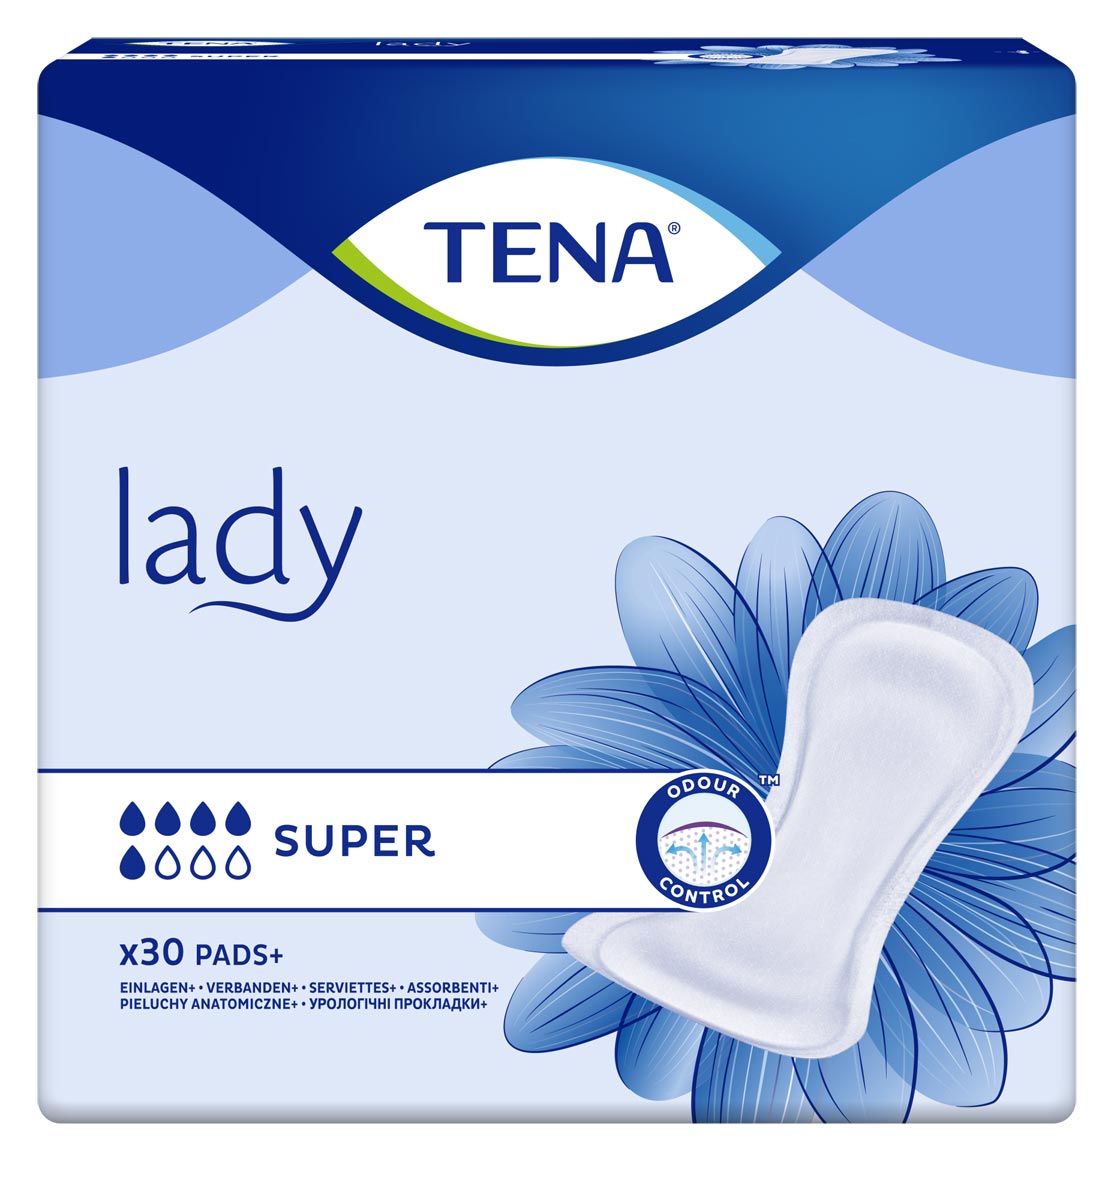 TENA Lady SUPER - Blasenschwäche Einlagen (6x30 Stück)